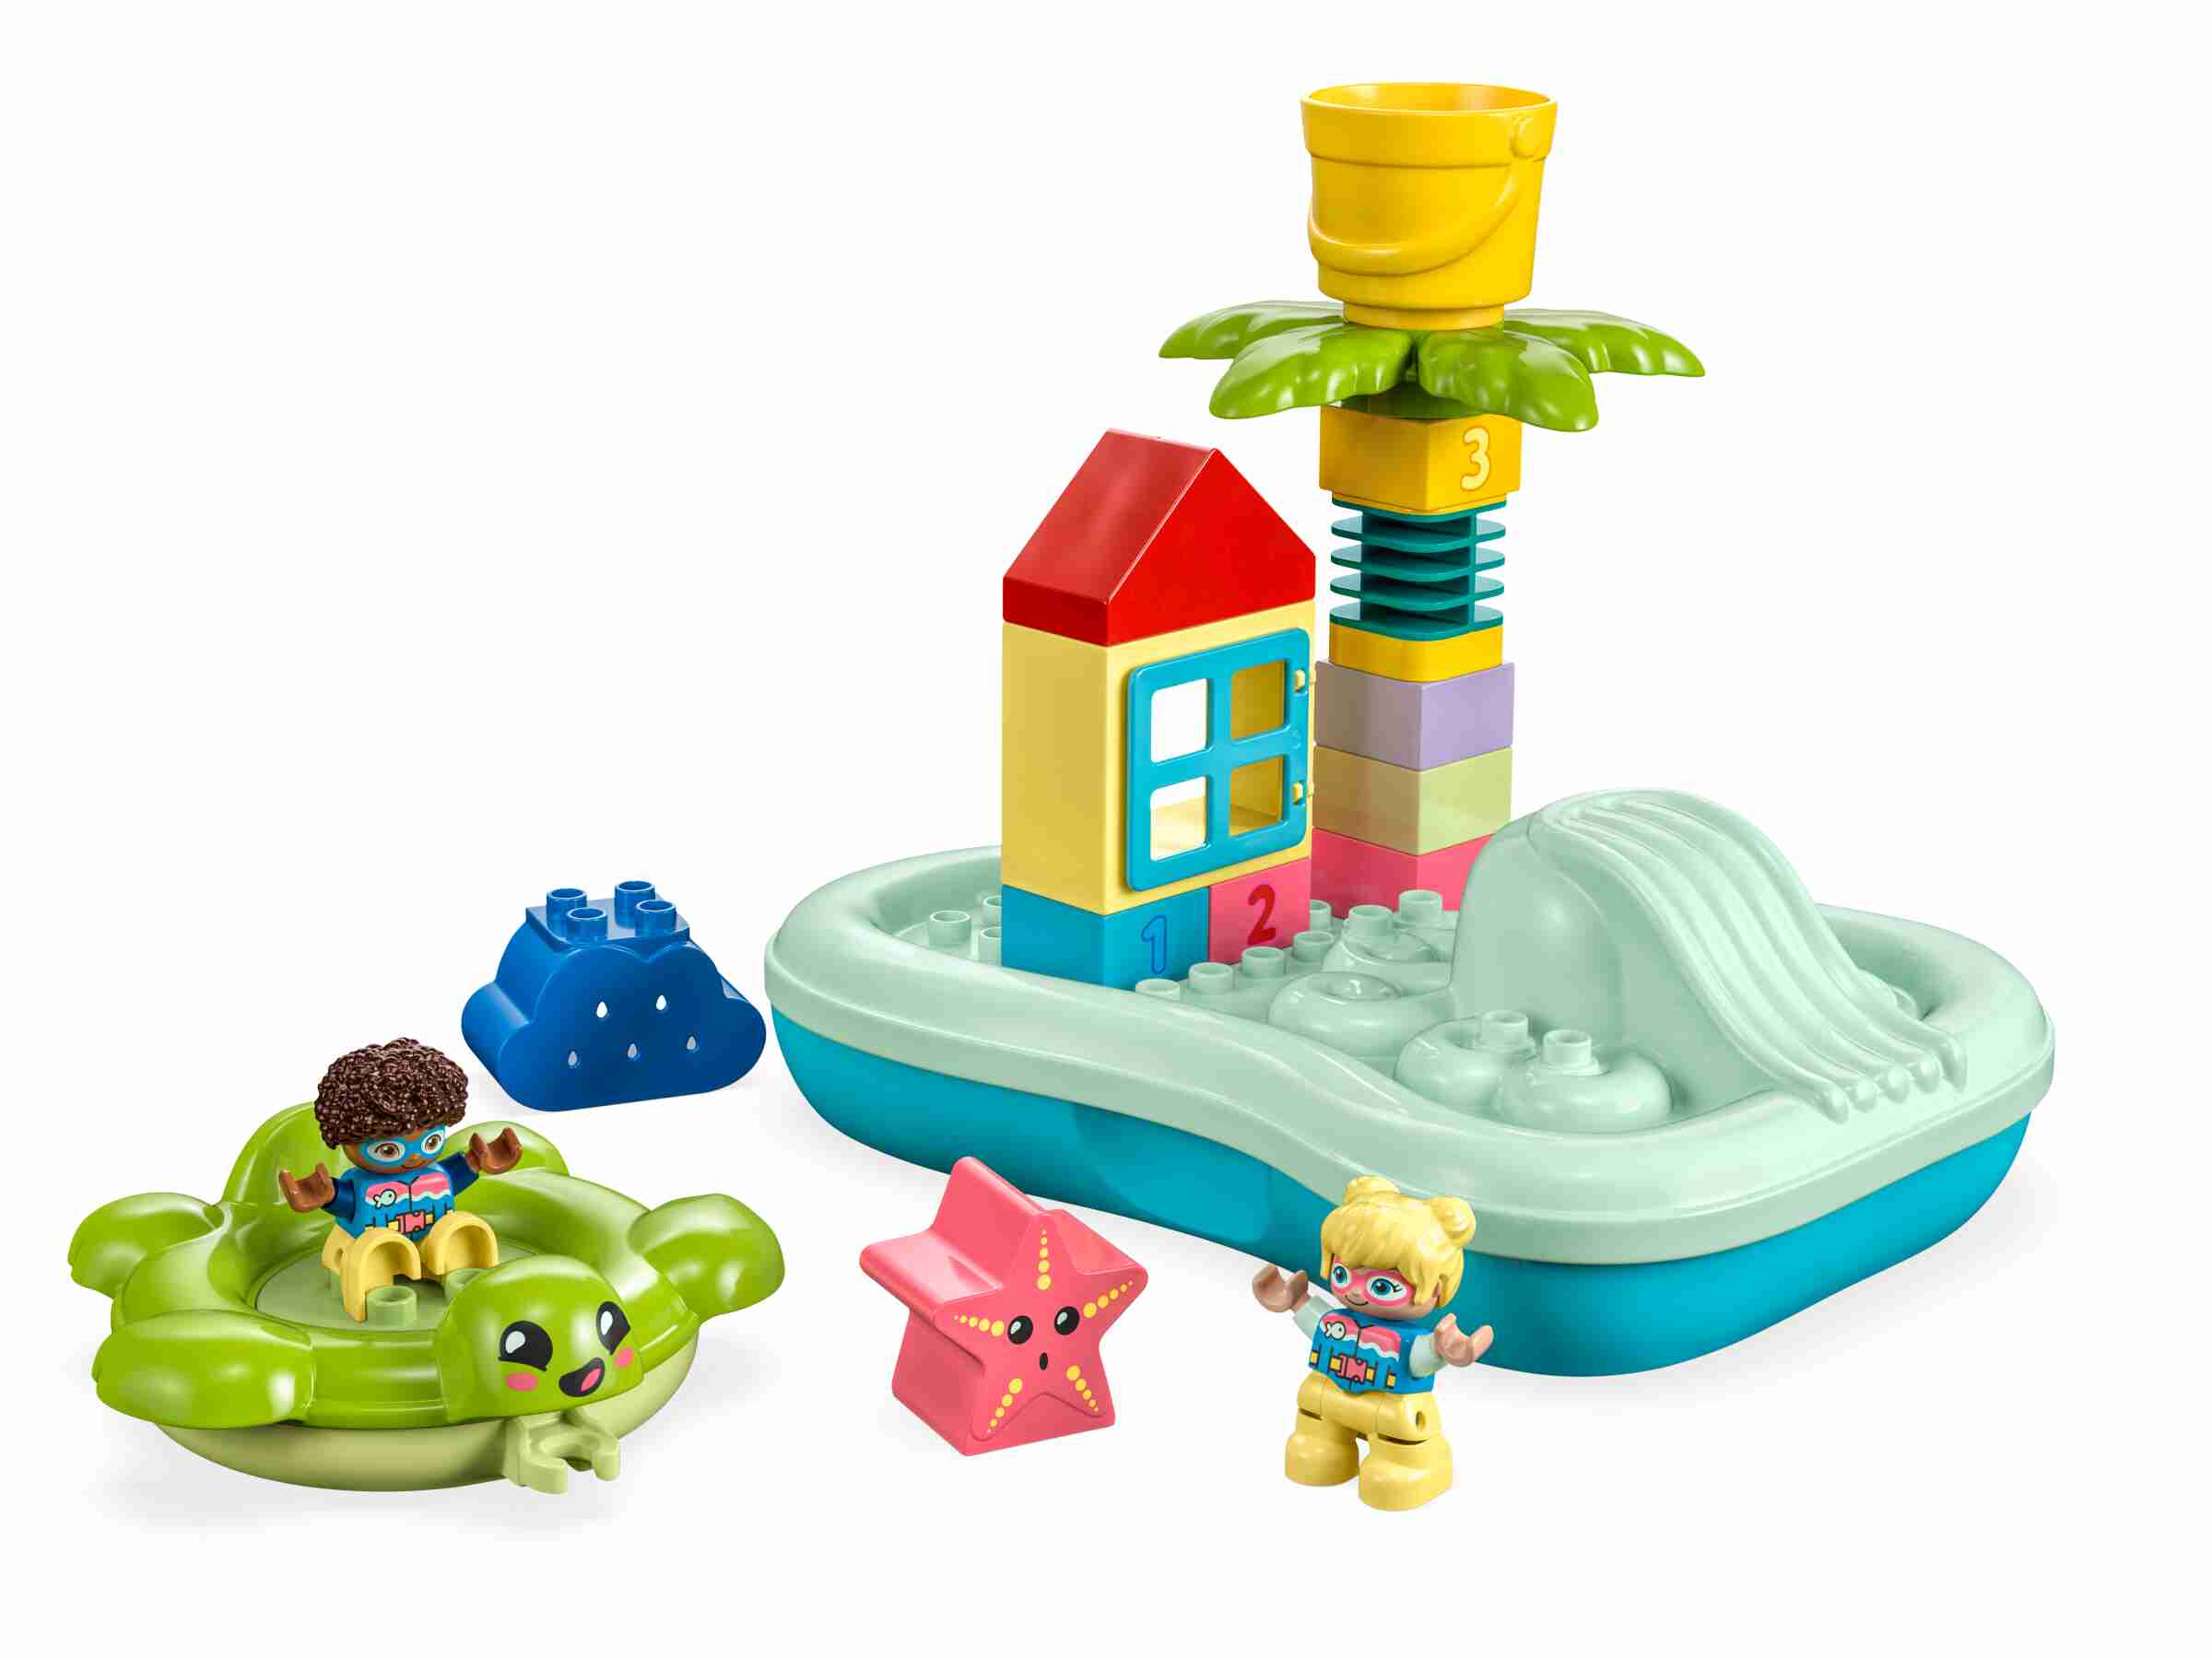 LEGO 10989 DUPLO Wasserrutsche, Badewannenspielzeug, 2 Kinderfiguren